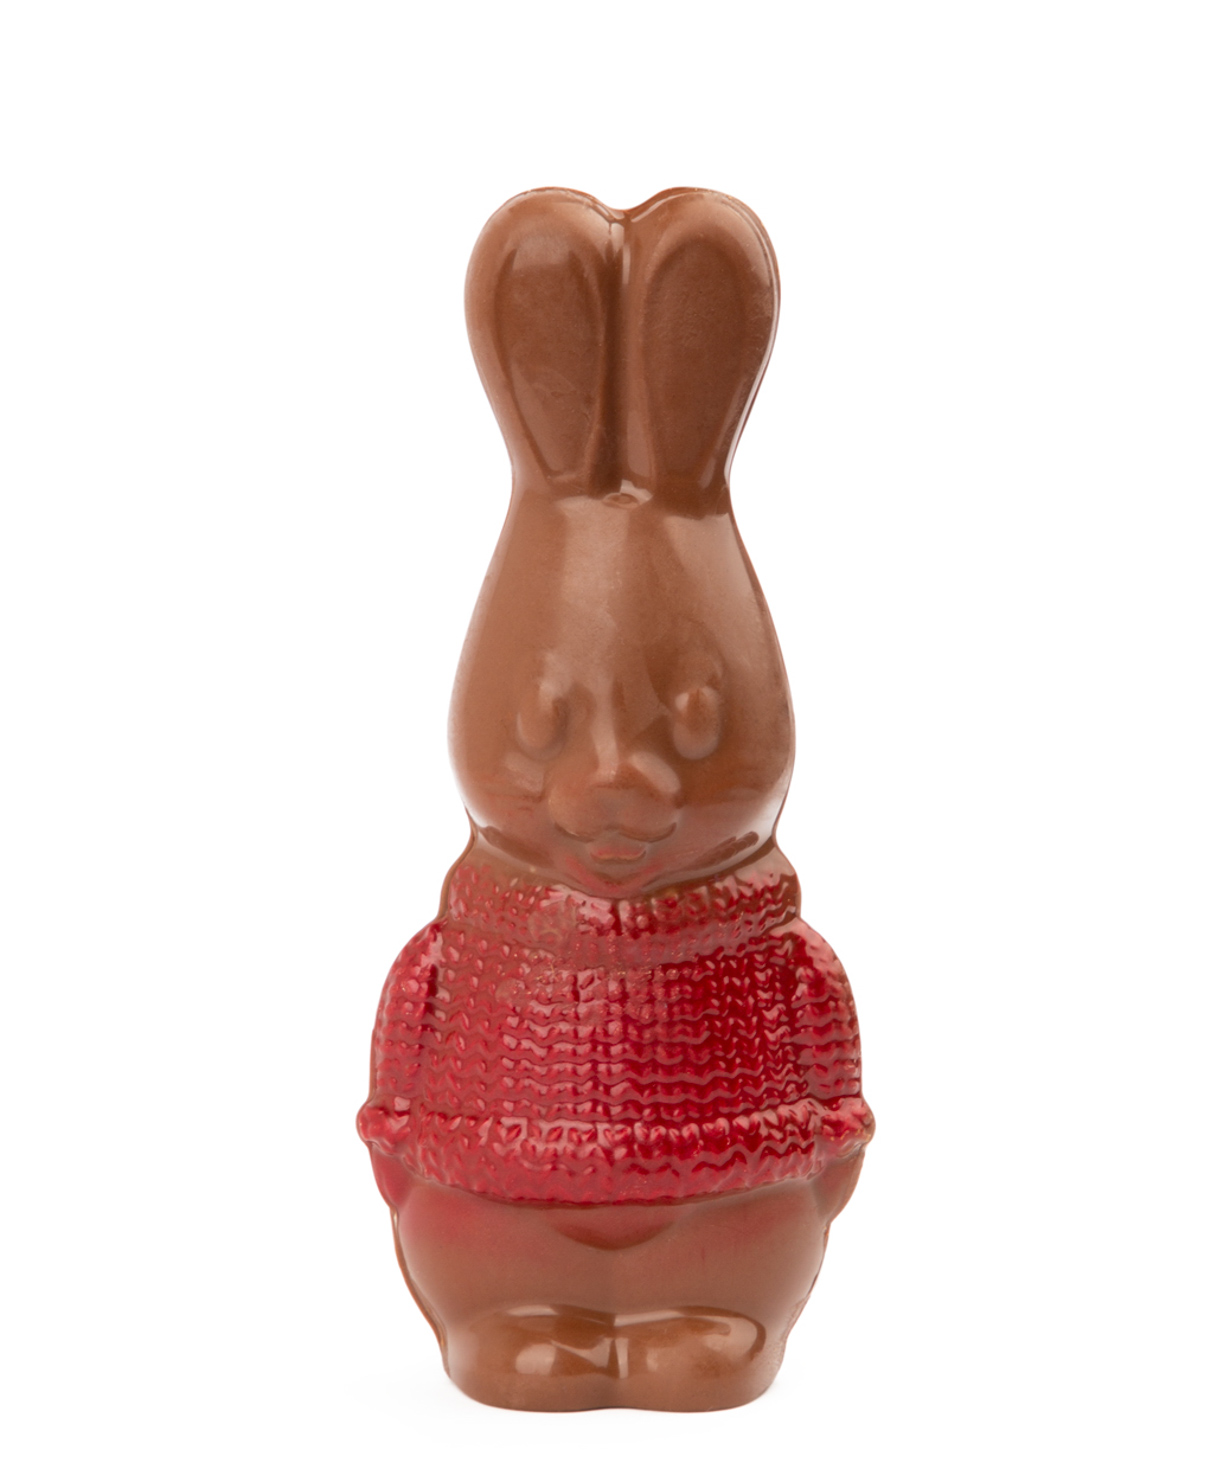 Chocolate rabbit `Lara Chocolate` red